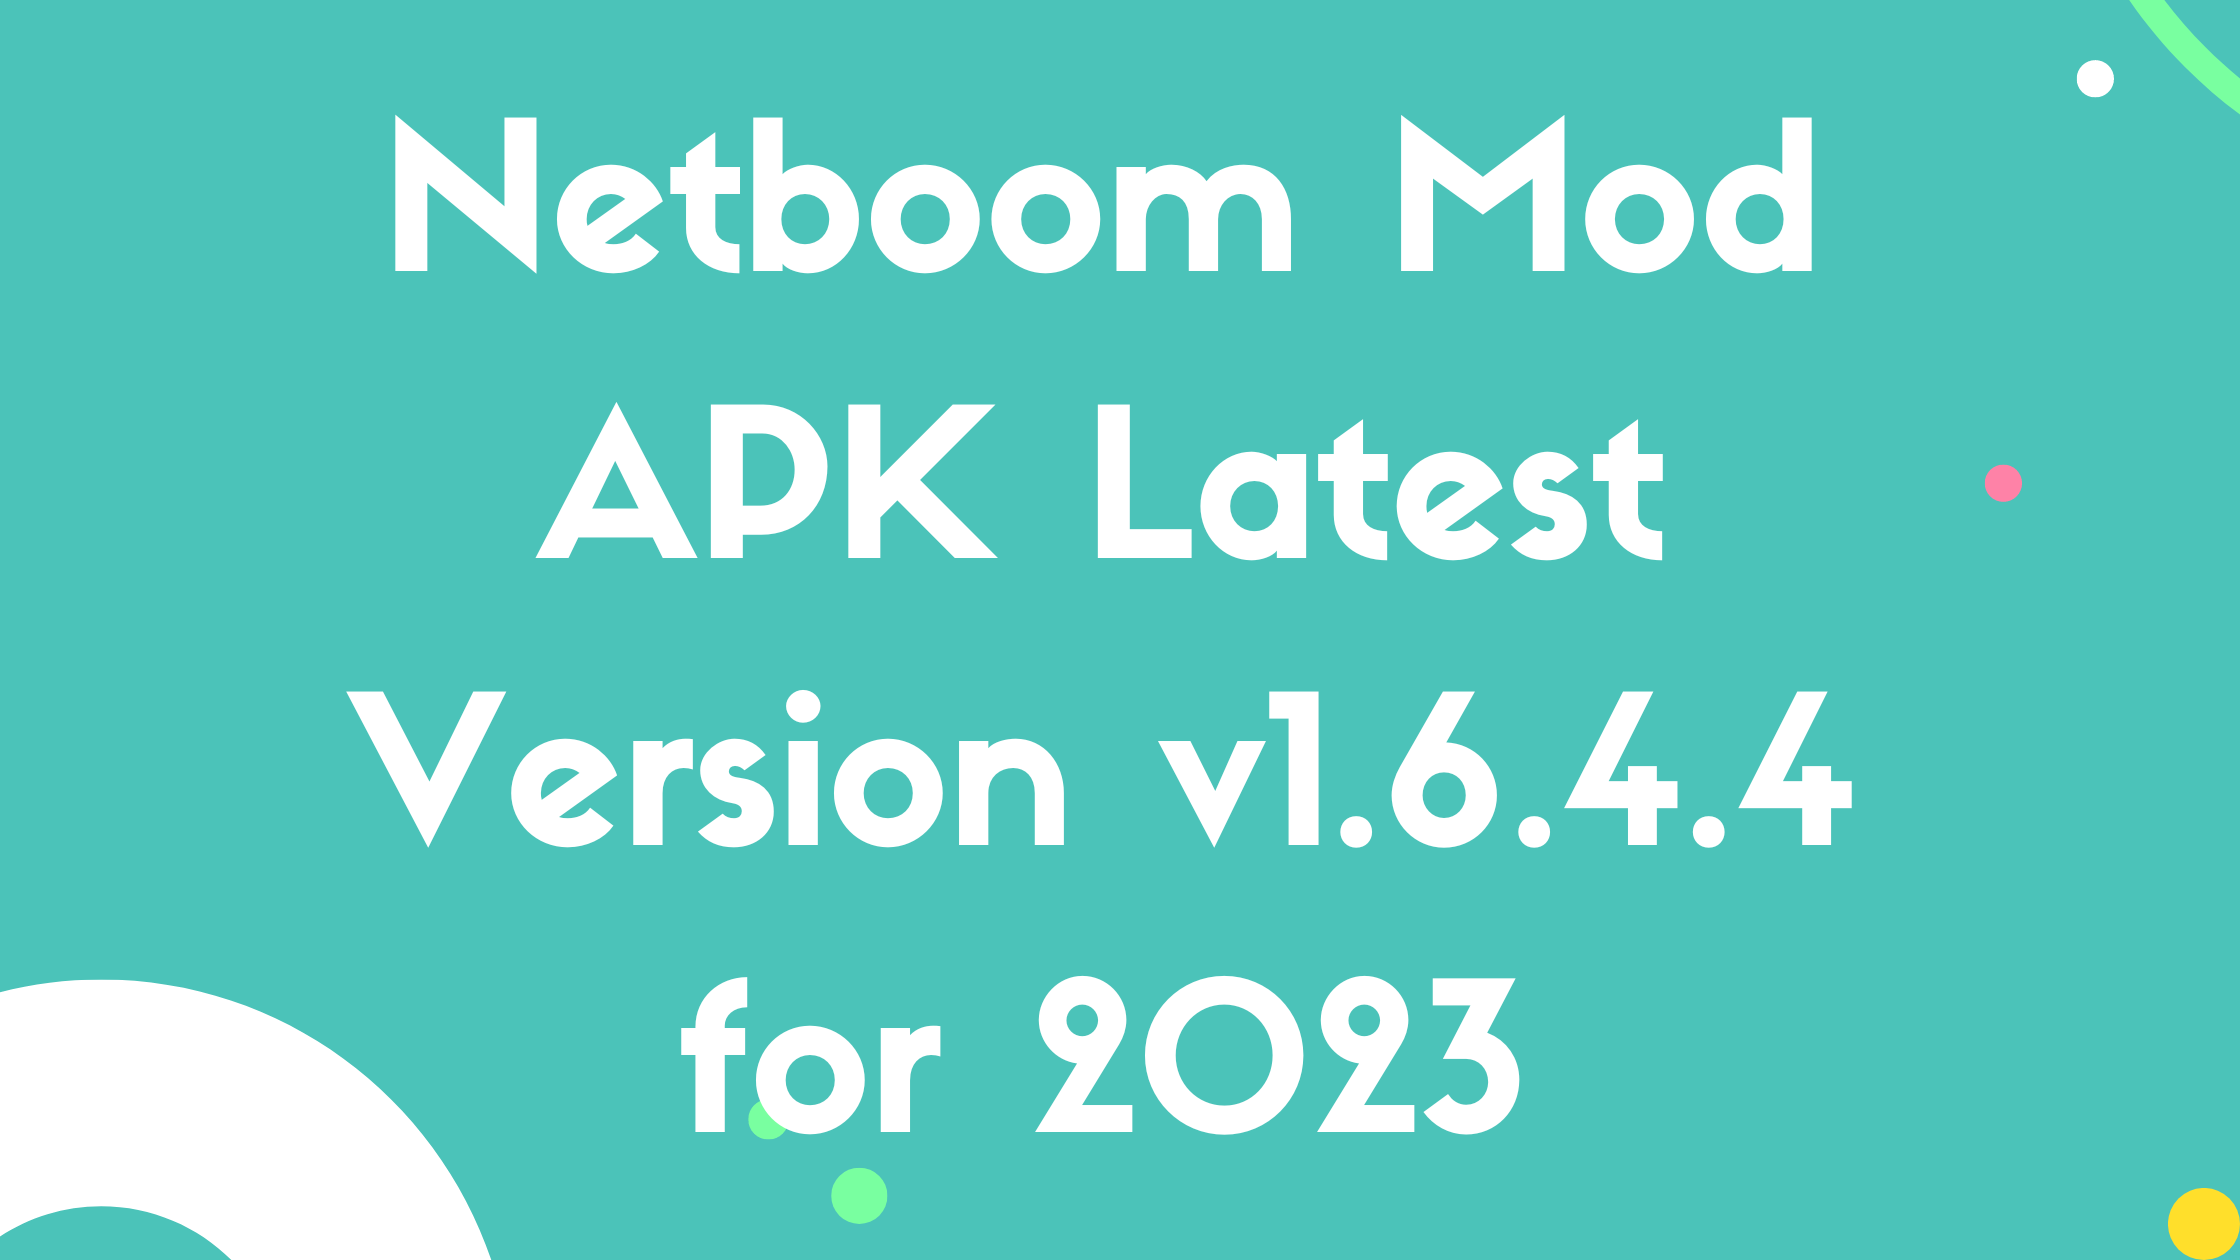 Netboom Mod APK Latest Version v1.6.4.4 for 2023